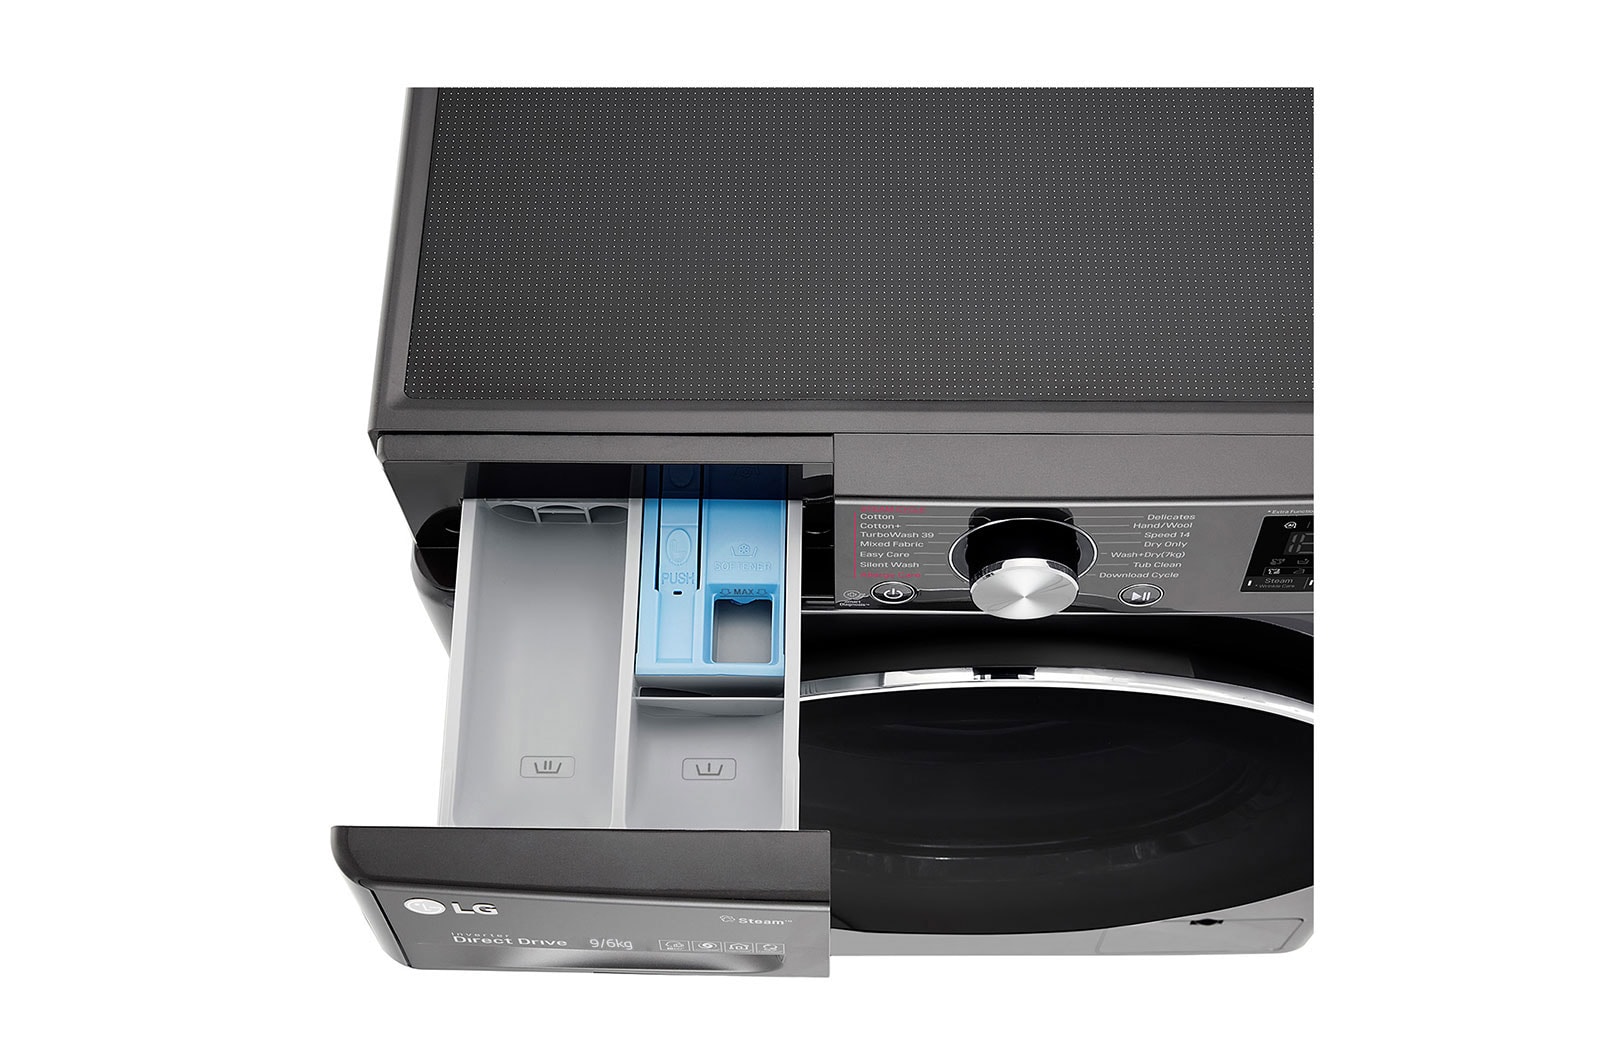 LG Washing Machine 9/6 kg 1400 rpm - Black